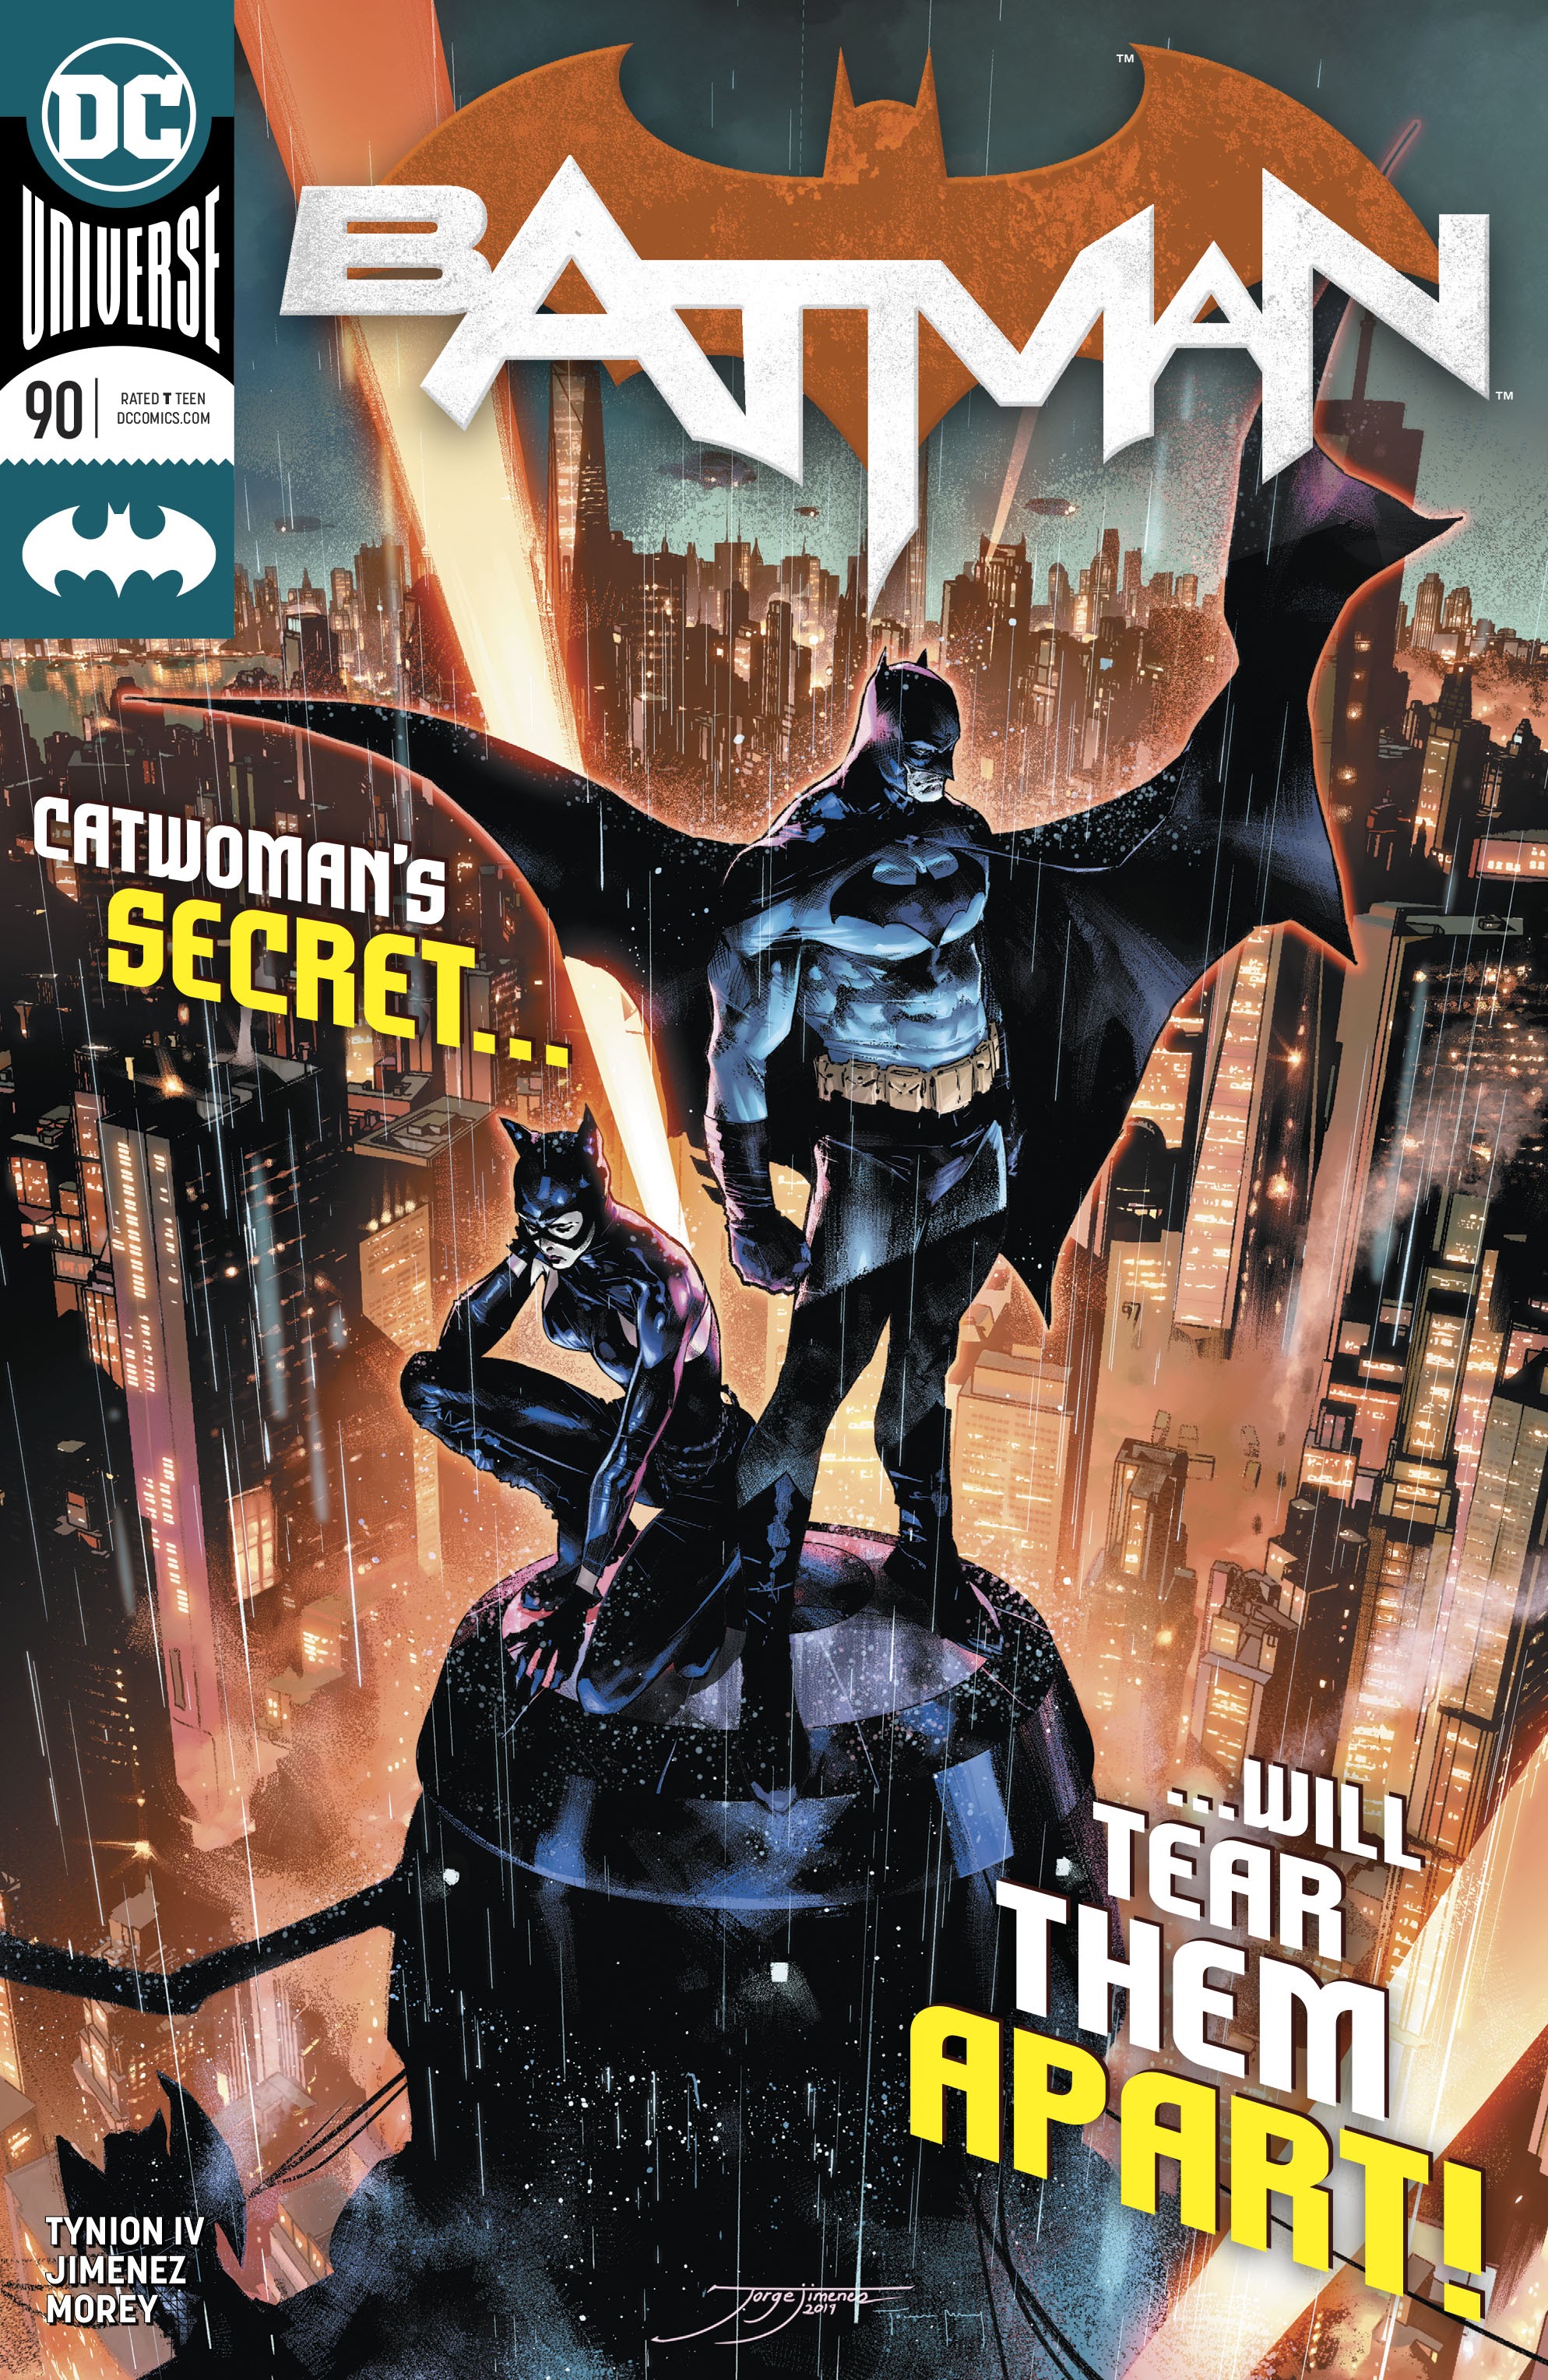 Batman vol.3 #8 2016 DC Universe Rebirth High Grade 9.4 DC Comic Book CL99-86 